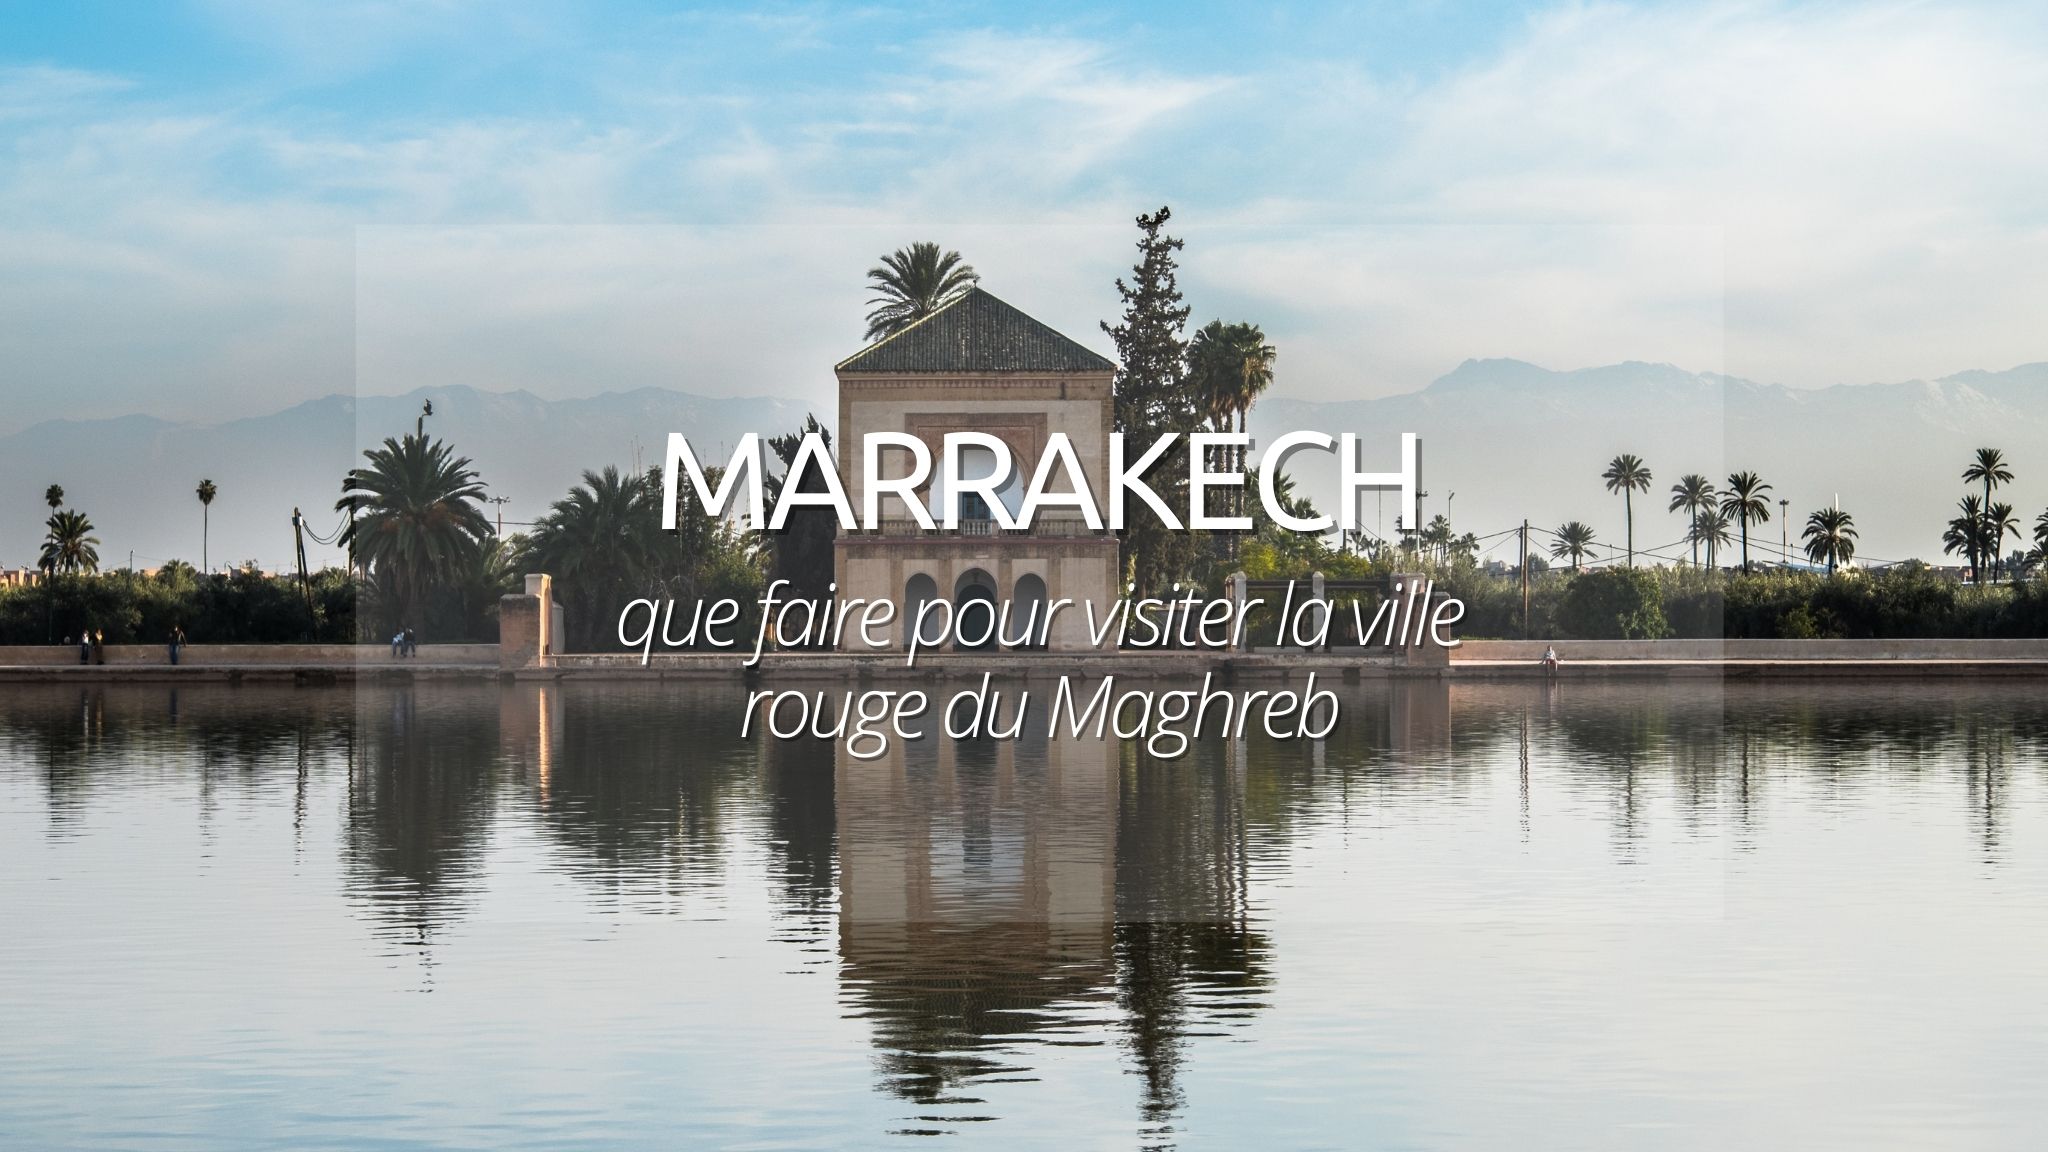 Marrakech : guide des incontournables à voir et à savoir